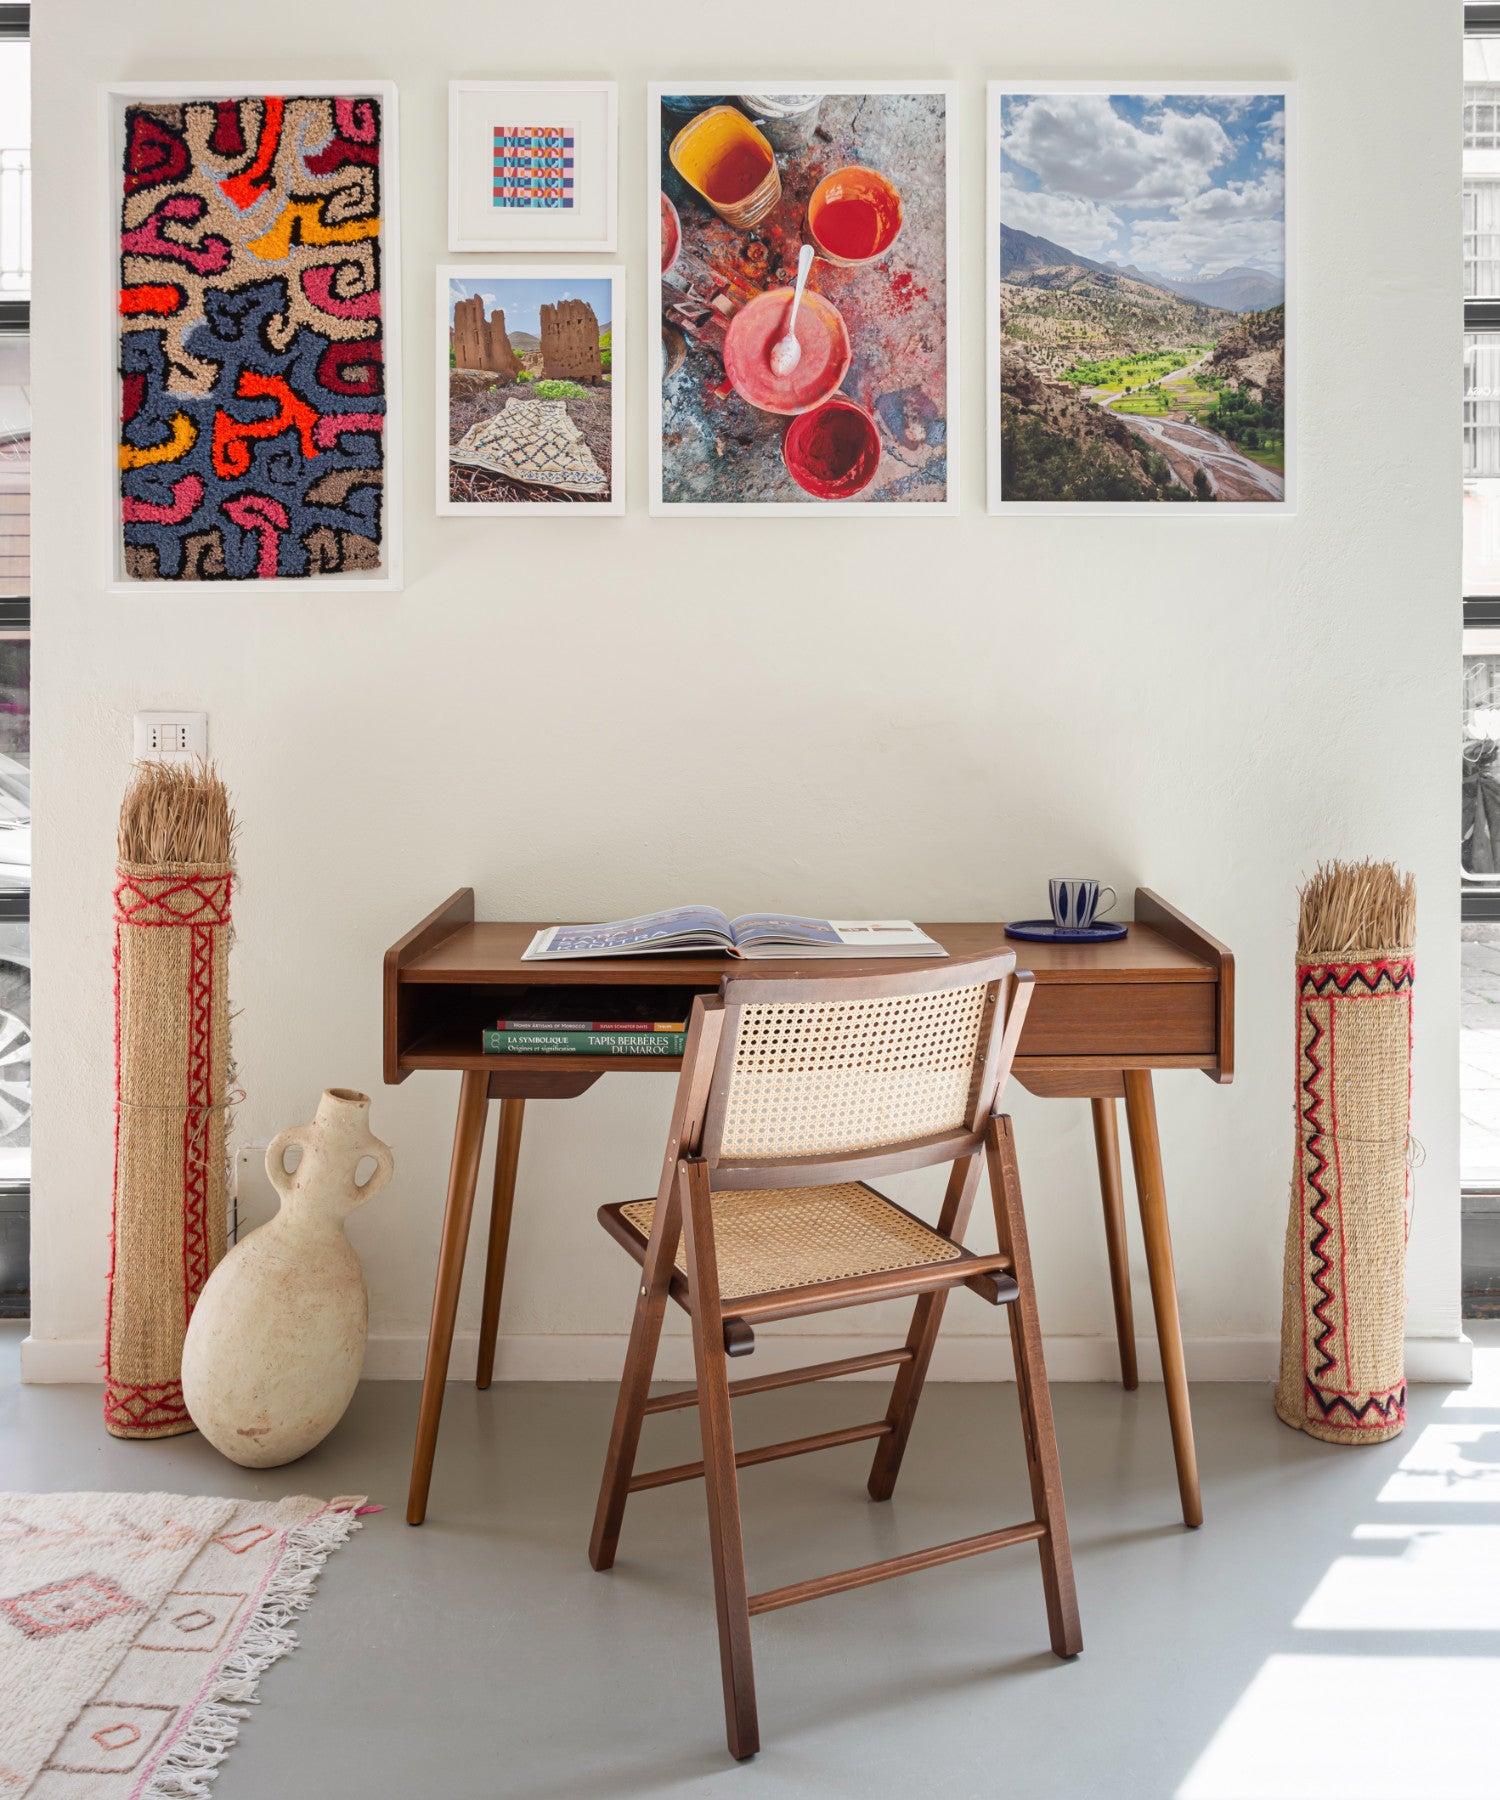 gallery wall con tre foto una stampa e uno tappeto appesi e sotto un tavolino in legno marrone. ai fianchi del tavolo delle stuoie in paglia arrotolate